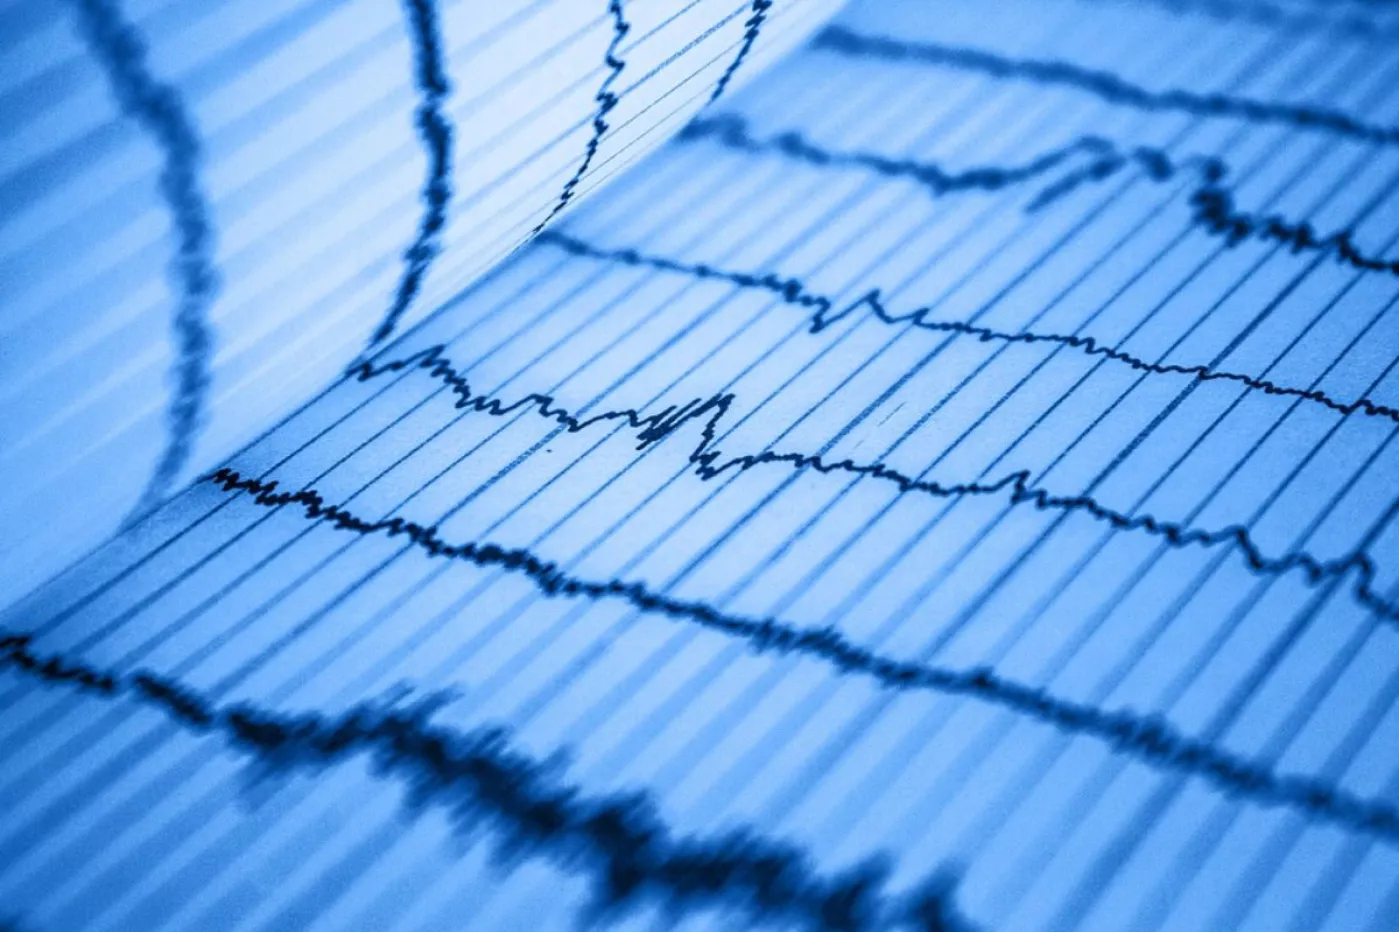 El electrocardiograma es una técnica diagnóstica económica, accesible y se ha venido usando desde hace más de un siglo.